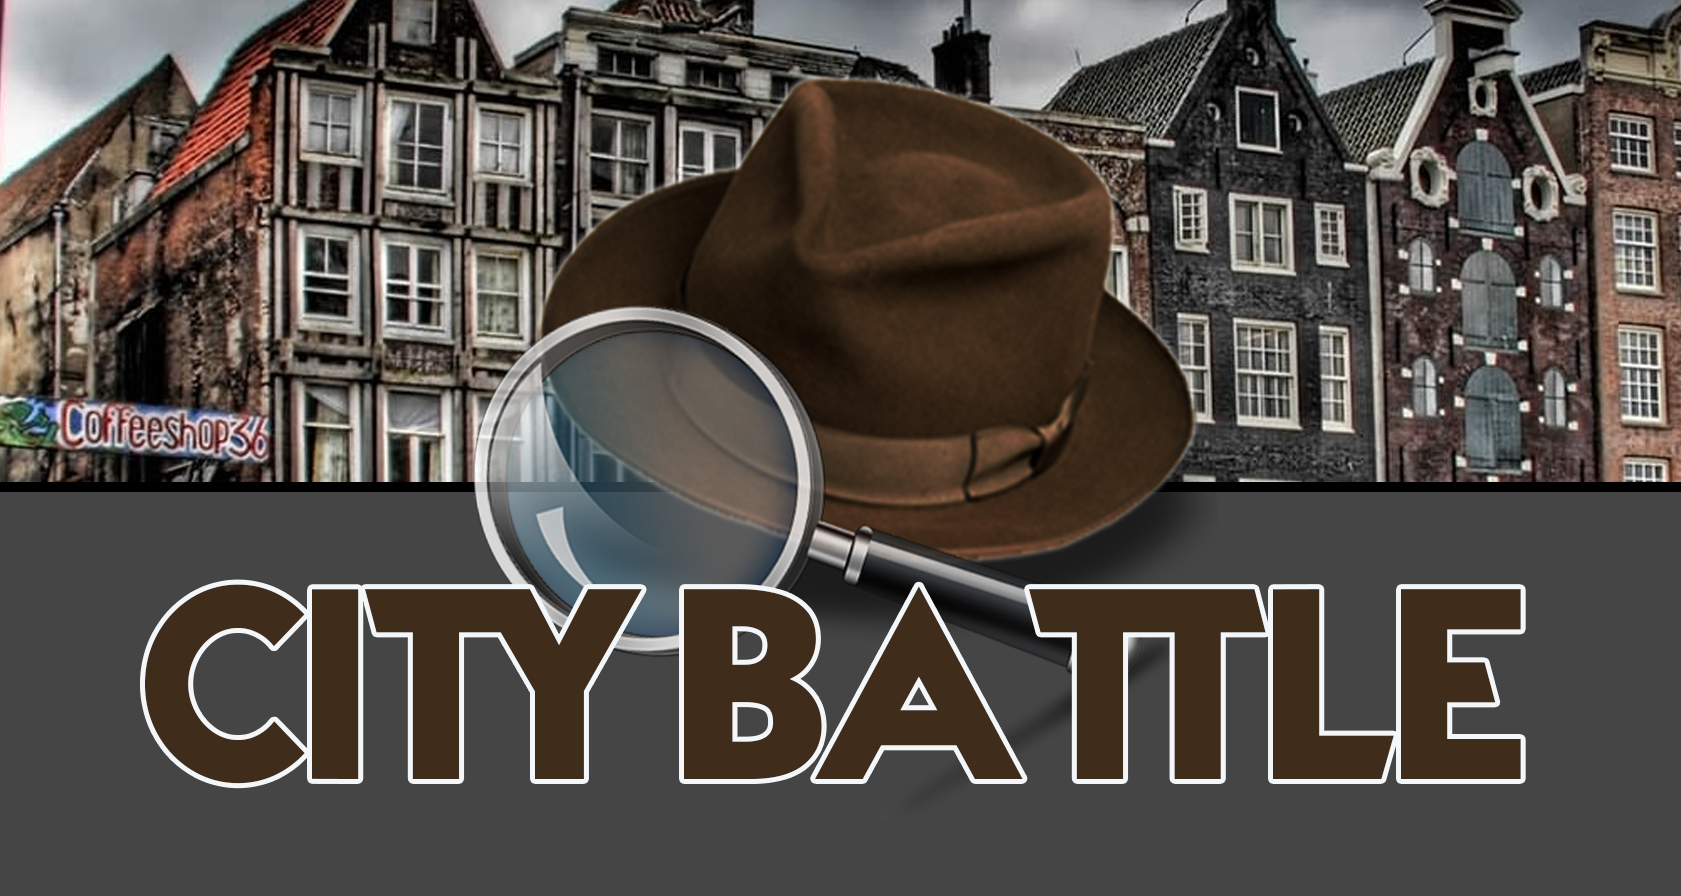 Personeelsuitje Apeldoorn: De Ultieme City Battle